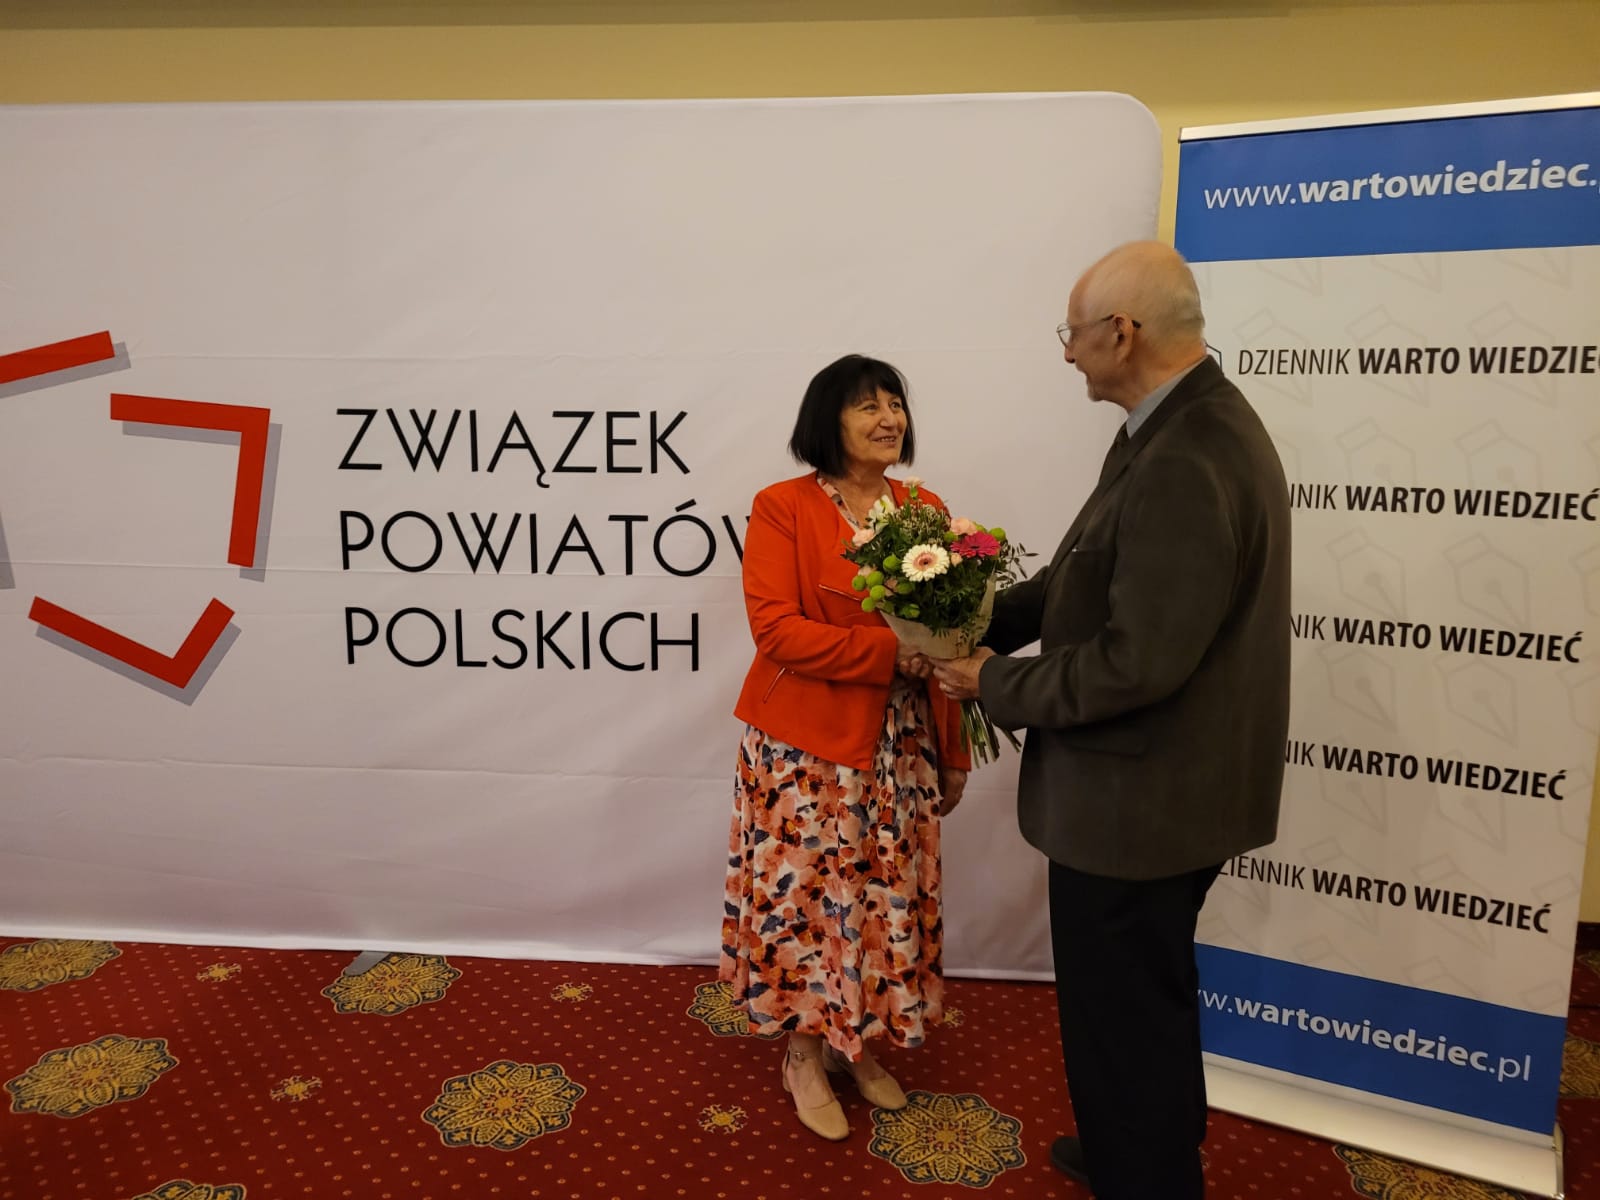 Alicja Kulka, p.o. GGK witana kwiatami podczas XXVIII Zgromadzenia Ogólnego Związku Powiatów Polskich